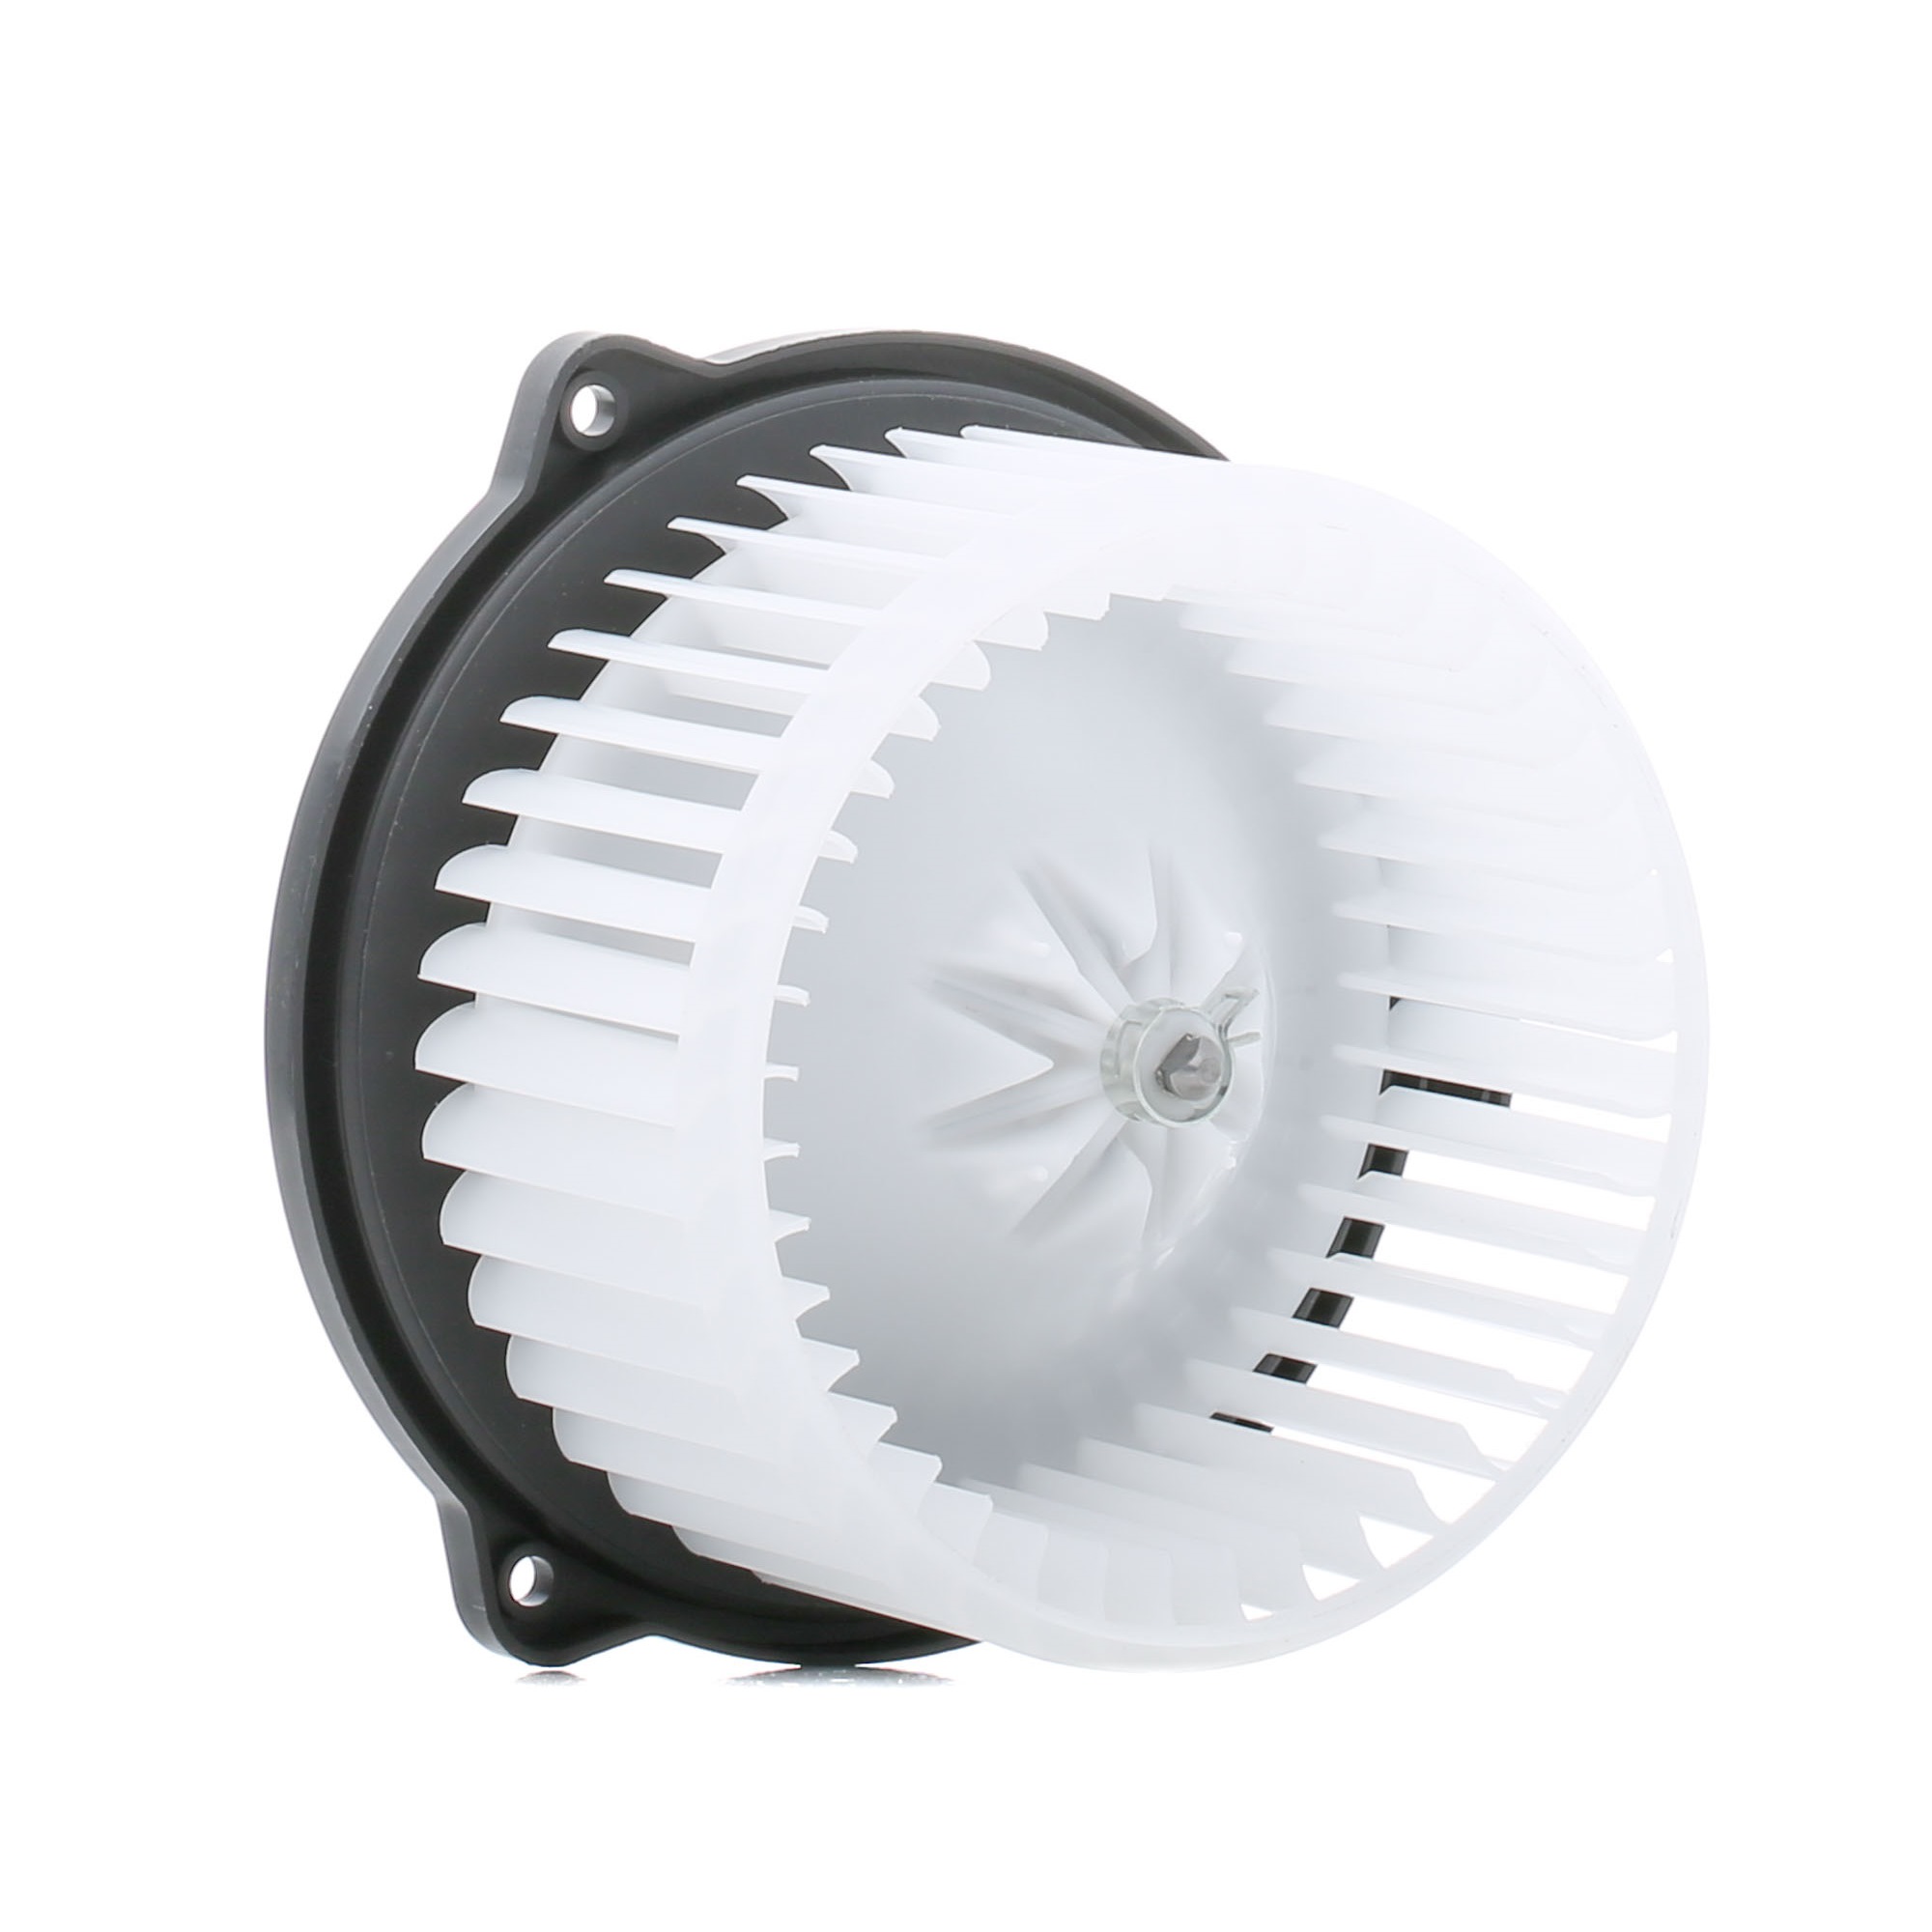 Ventilator-posamezni deli 60E2012-JPN v originalni kakovosti